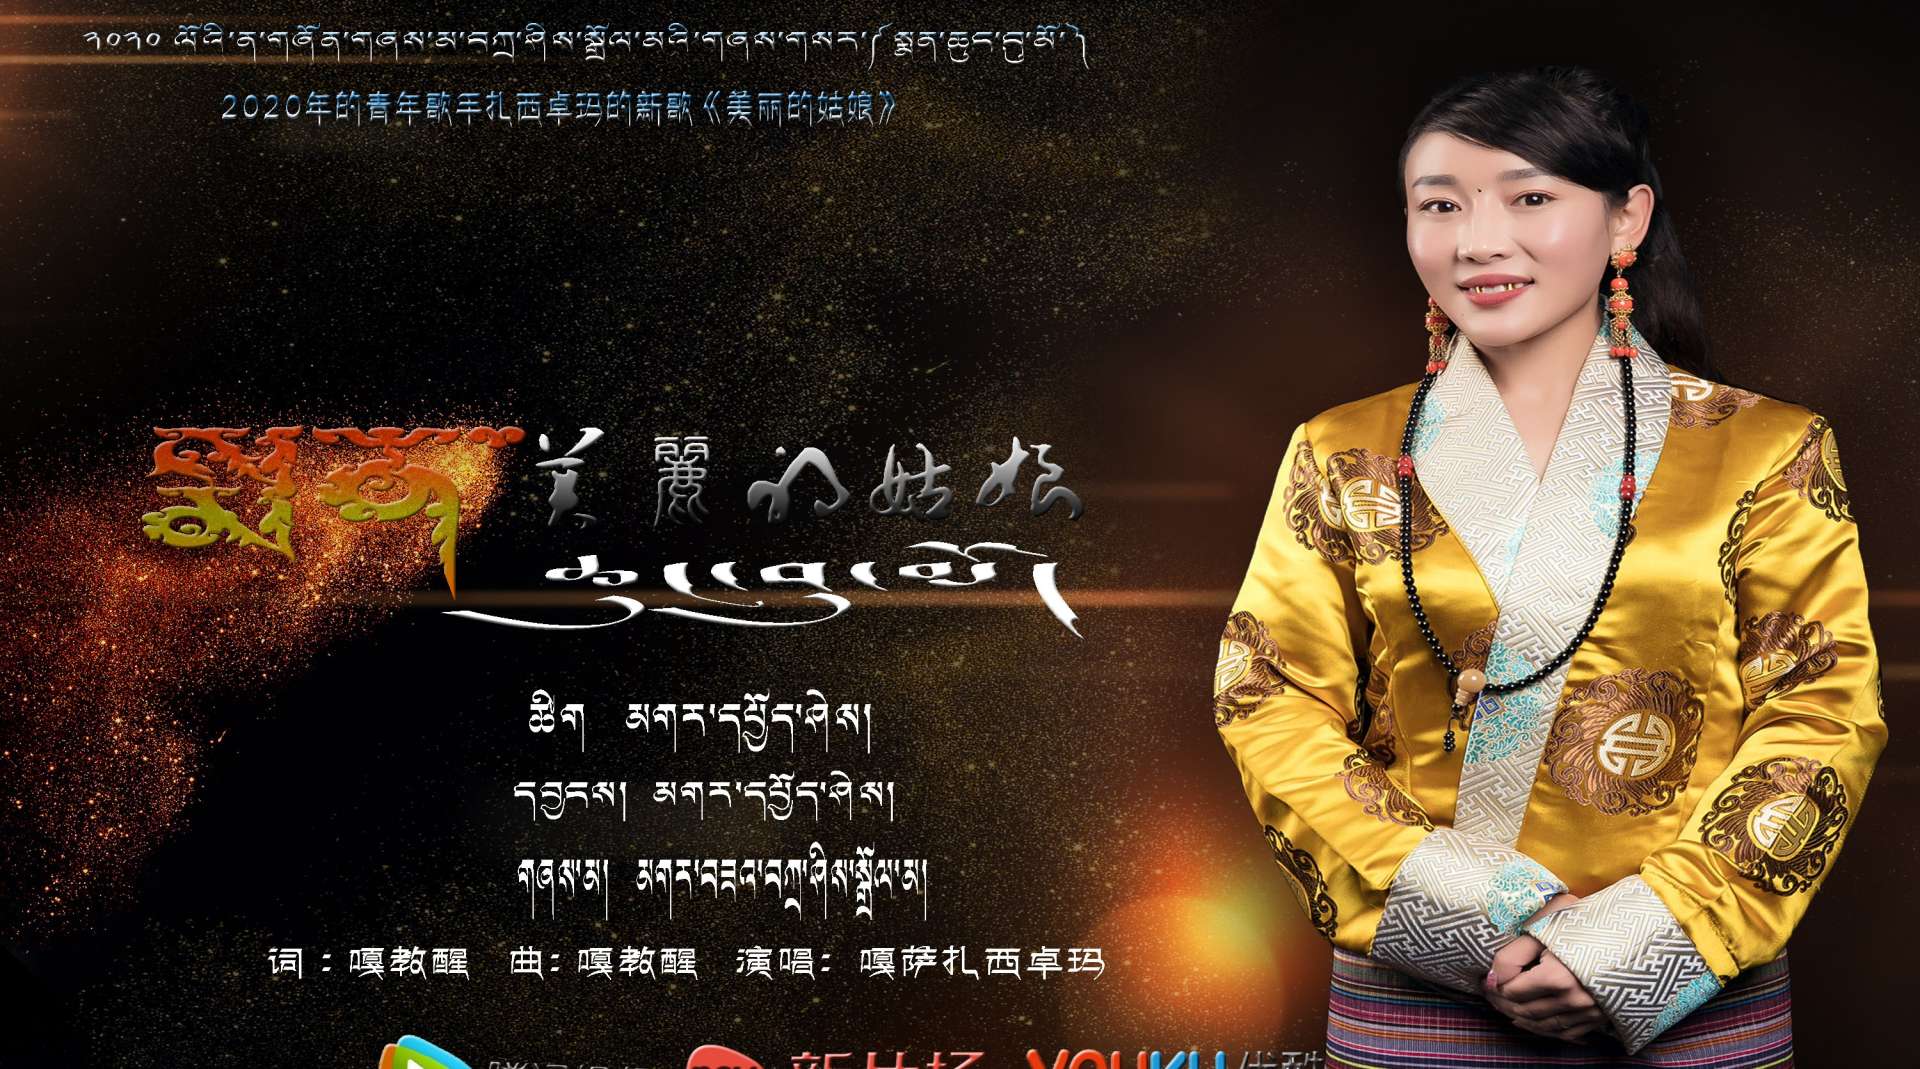 2020年藏族青年歌手扎西卓玛的新歌【美丽的姑娘】